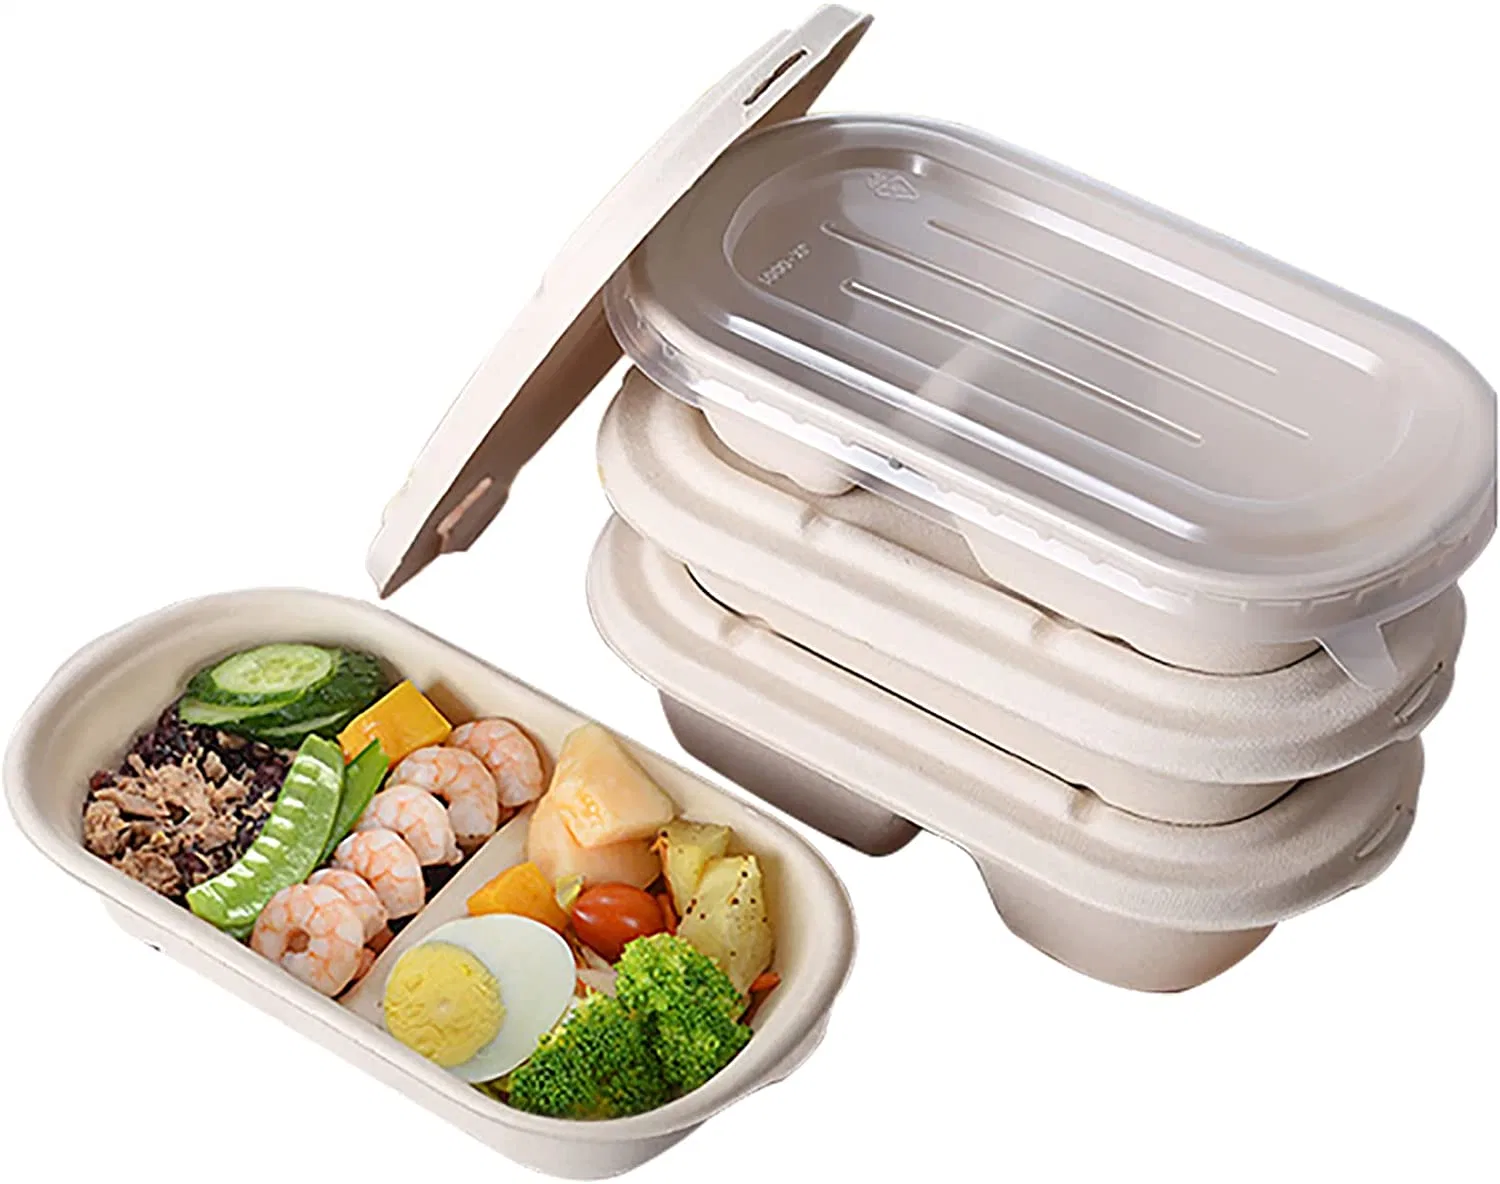 Einweg Biologisch Abbaubar 2 Fach Takeout Bento Mahlzeit Mittagessen Food Container Verpackung Zuckerrohr Bagasse Box mit Deckel